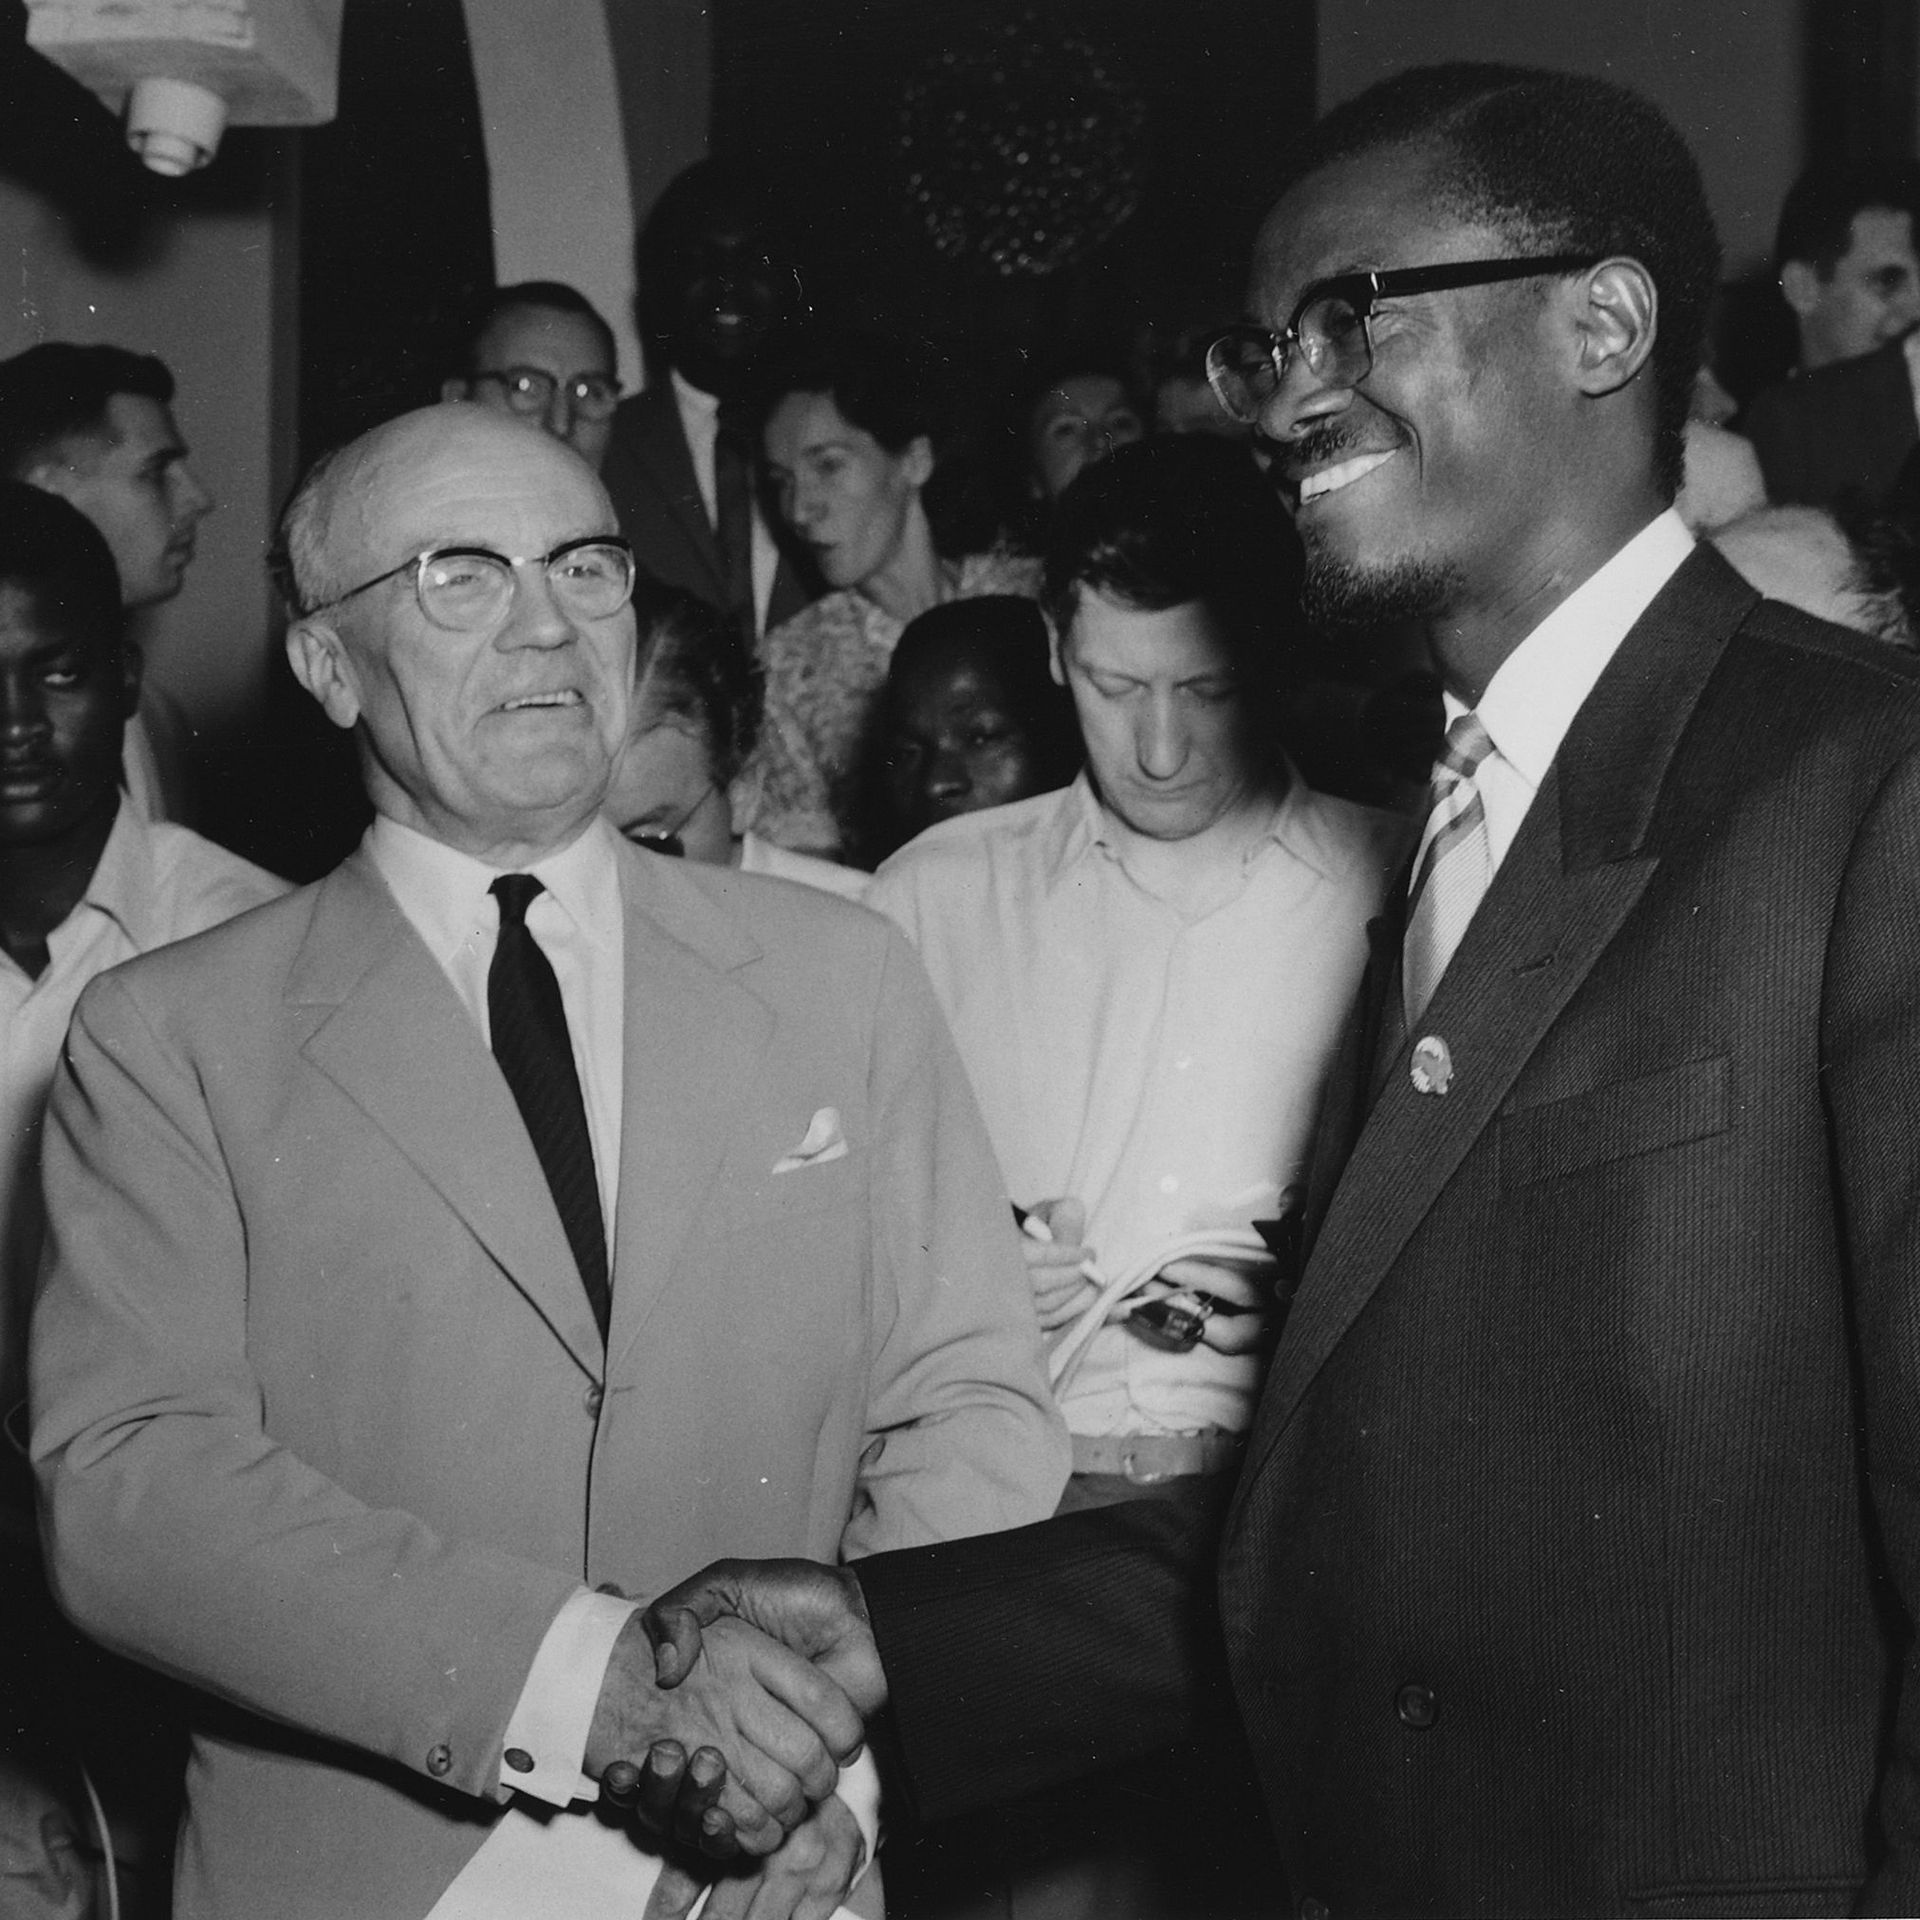 Le 23 juin, le ministre Ganshof reçoit pendant une heure Patrice Lumumba, qui lui présente la composition de son gouvernement et le nomme Premier ministre.